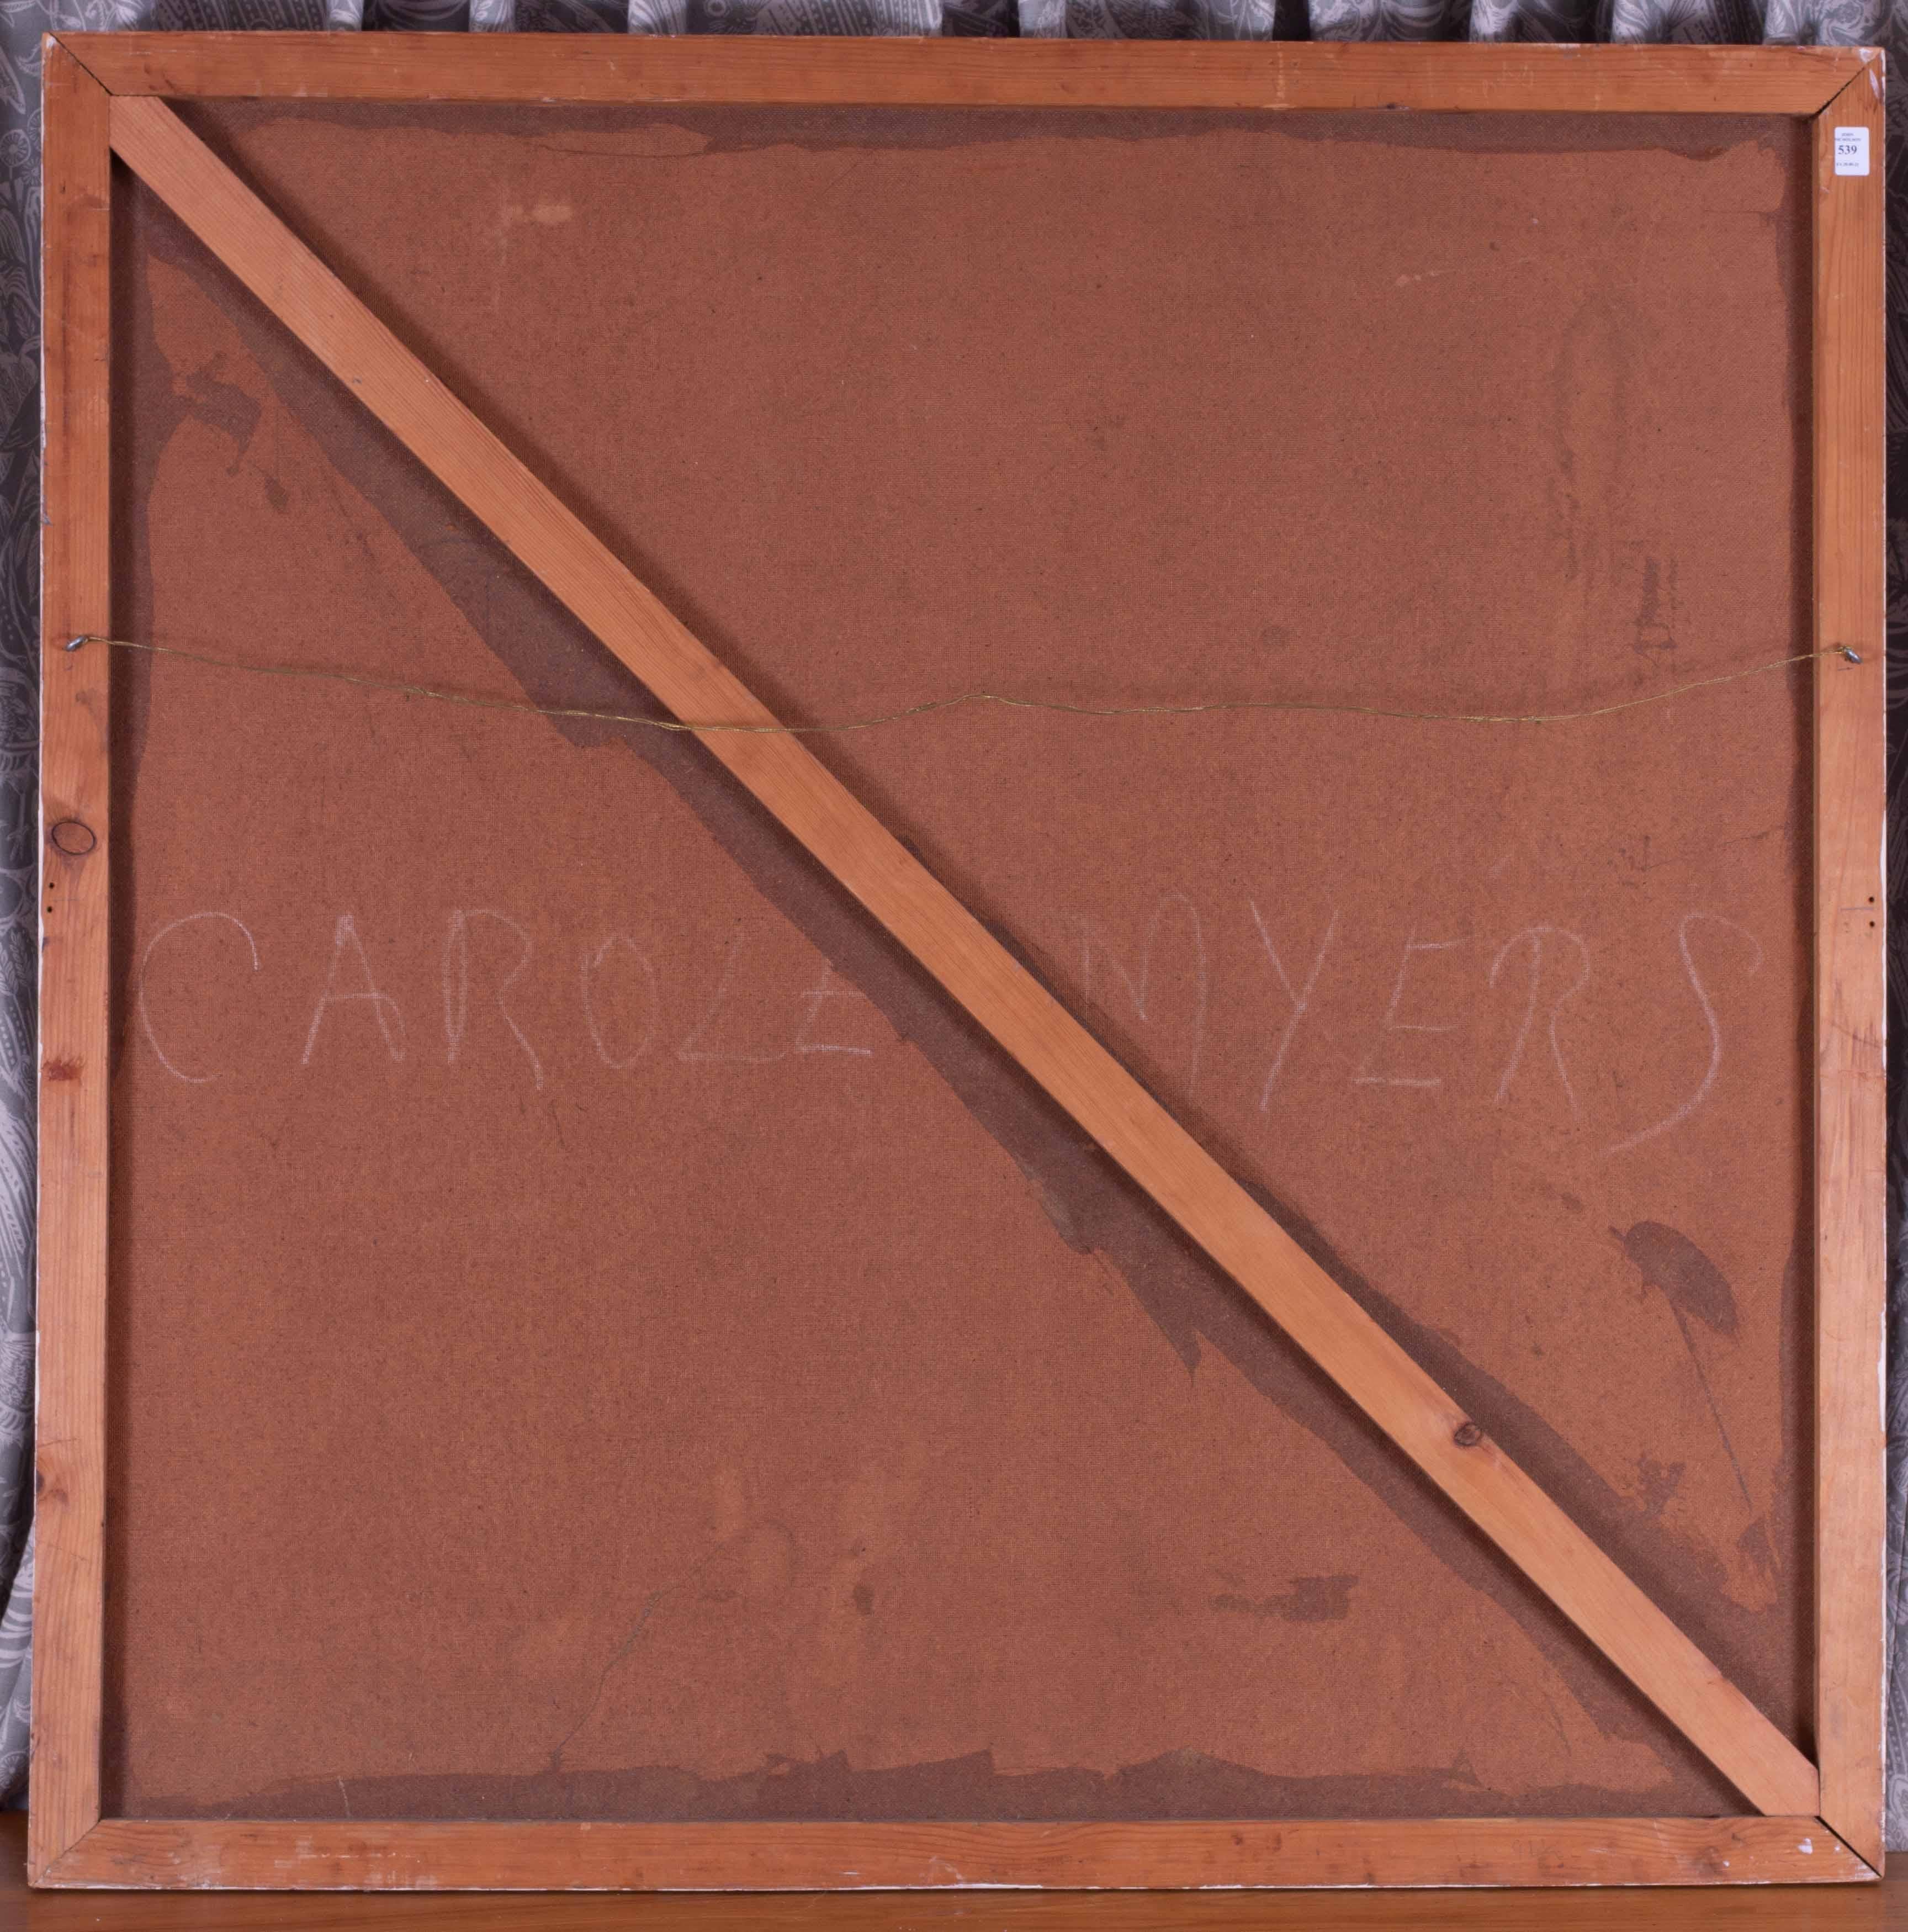 Der Kreis um Victor Vasarely
Öl auf Karton
47 x 47 Zoll. (119 x 119 cm.)
